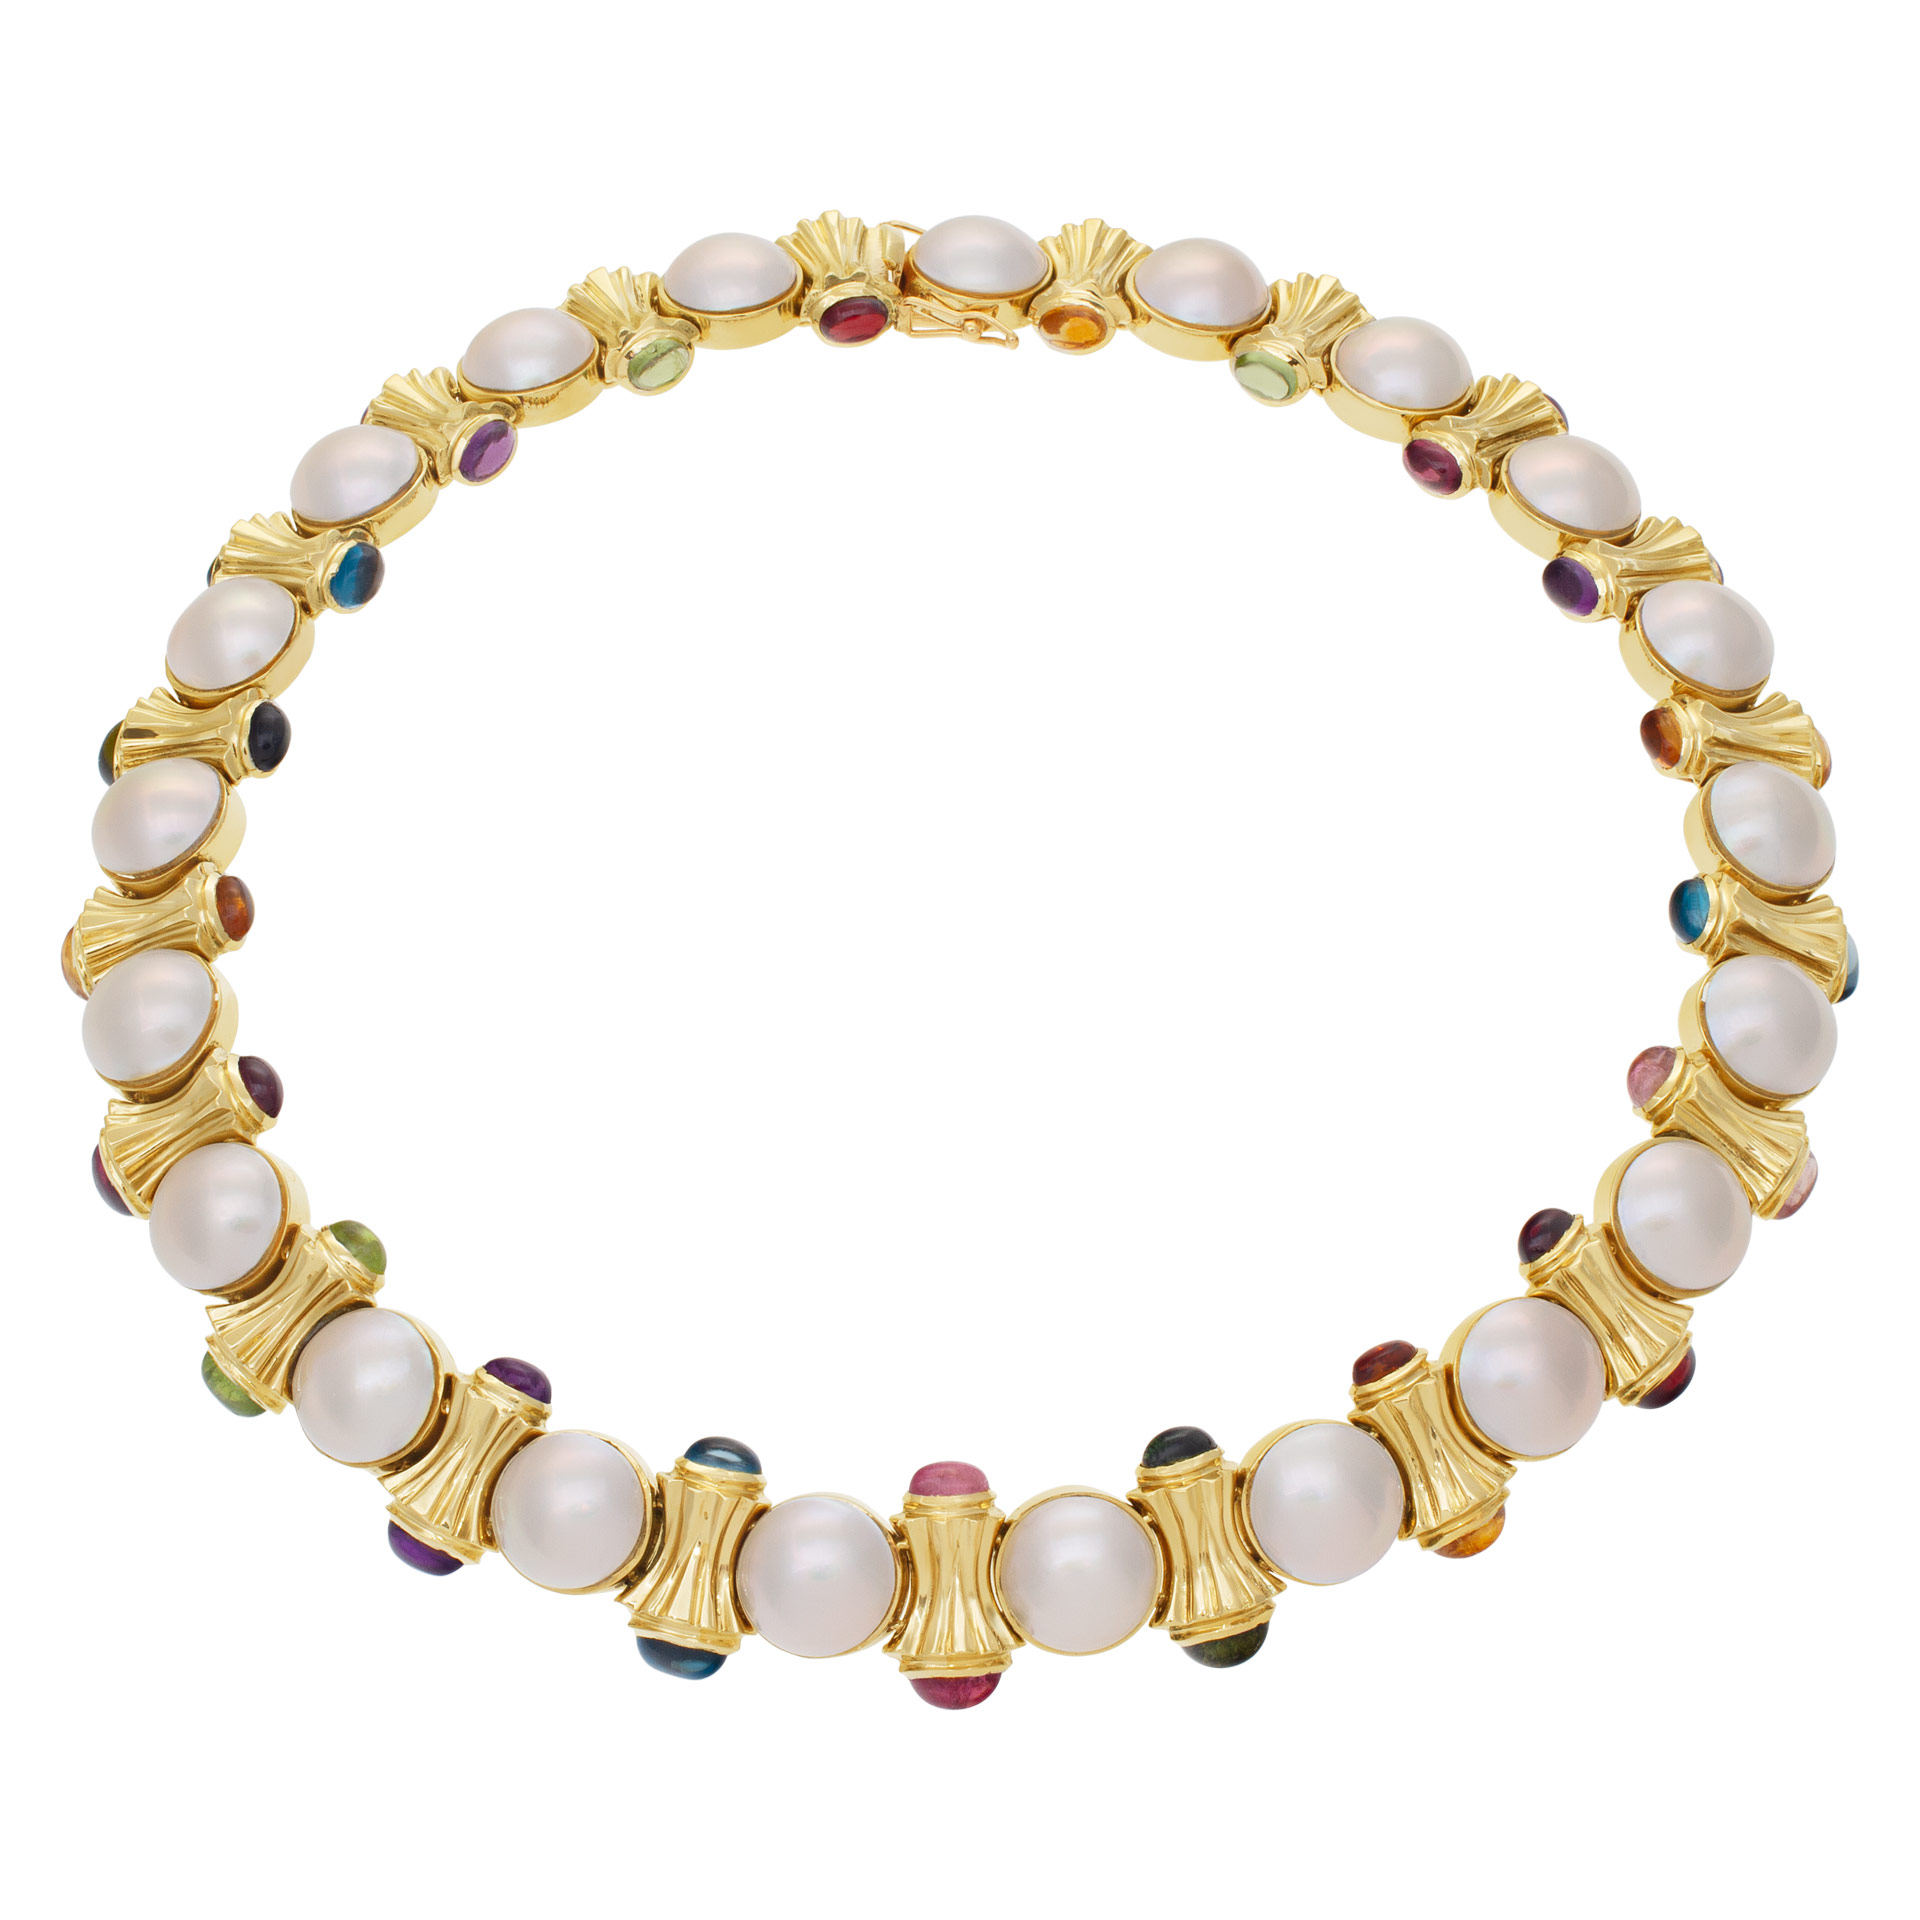 Pearl & semi precious cabochon colored stones choker necklace set in 14K gold.